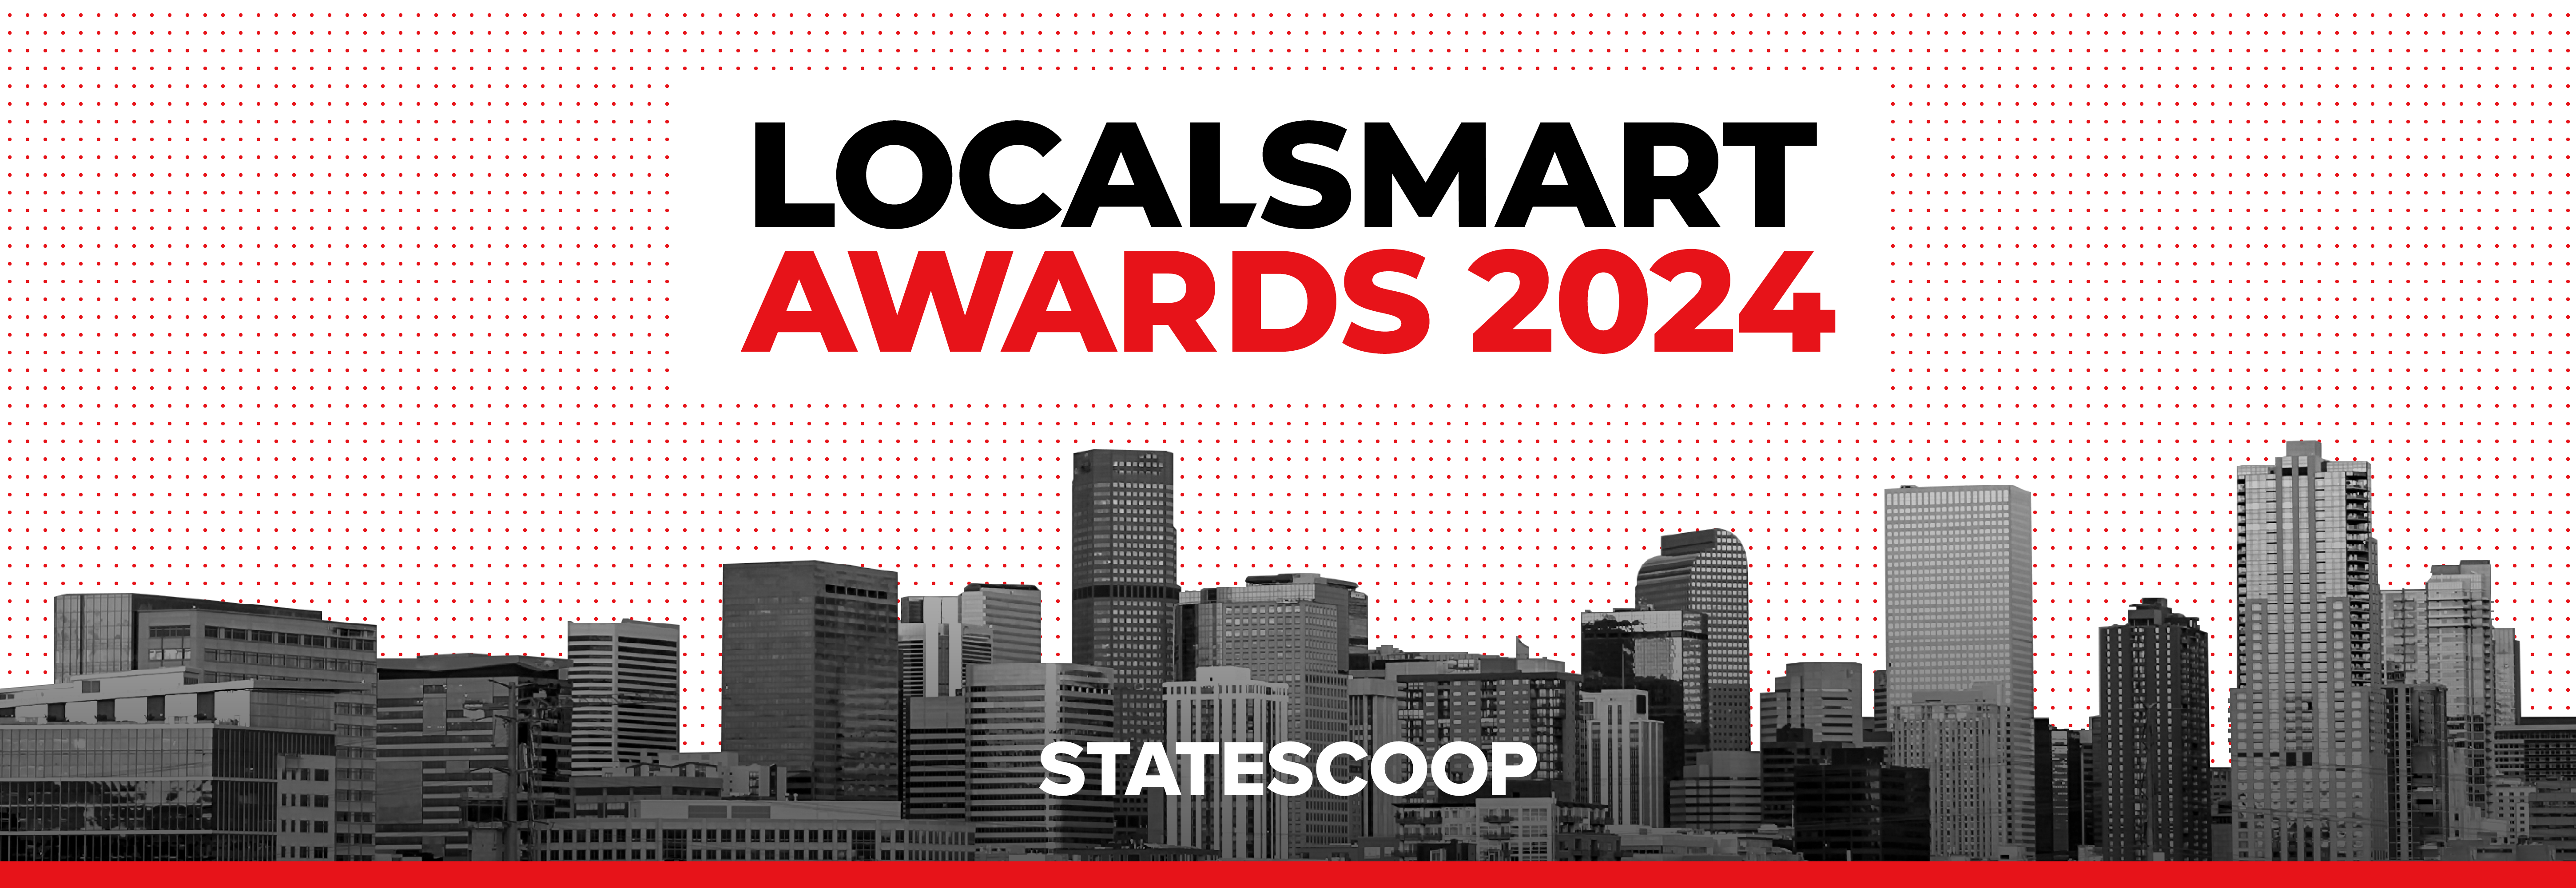 LocalSmart Awards